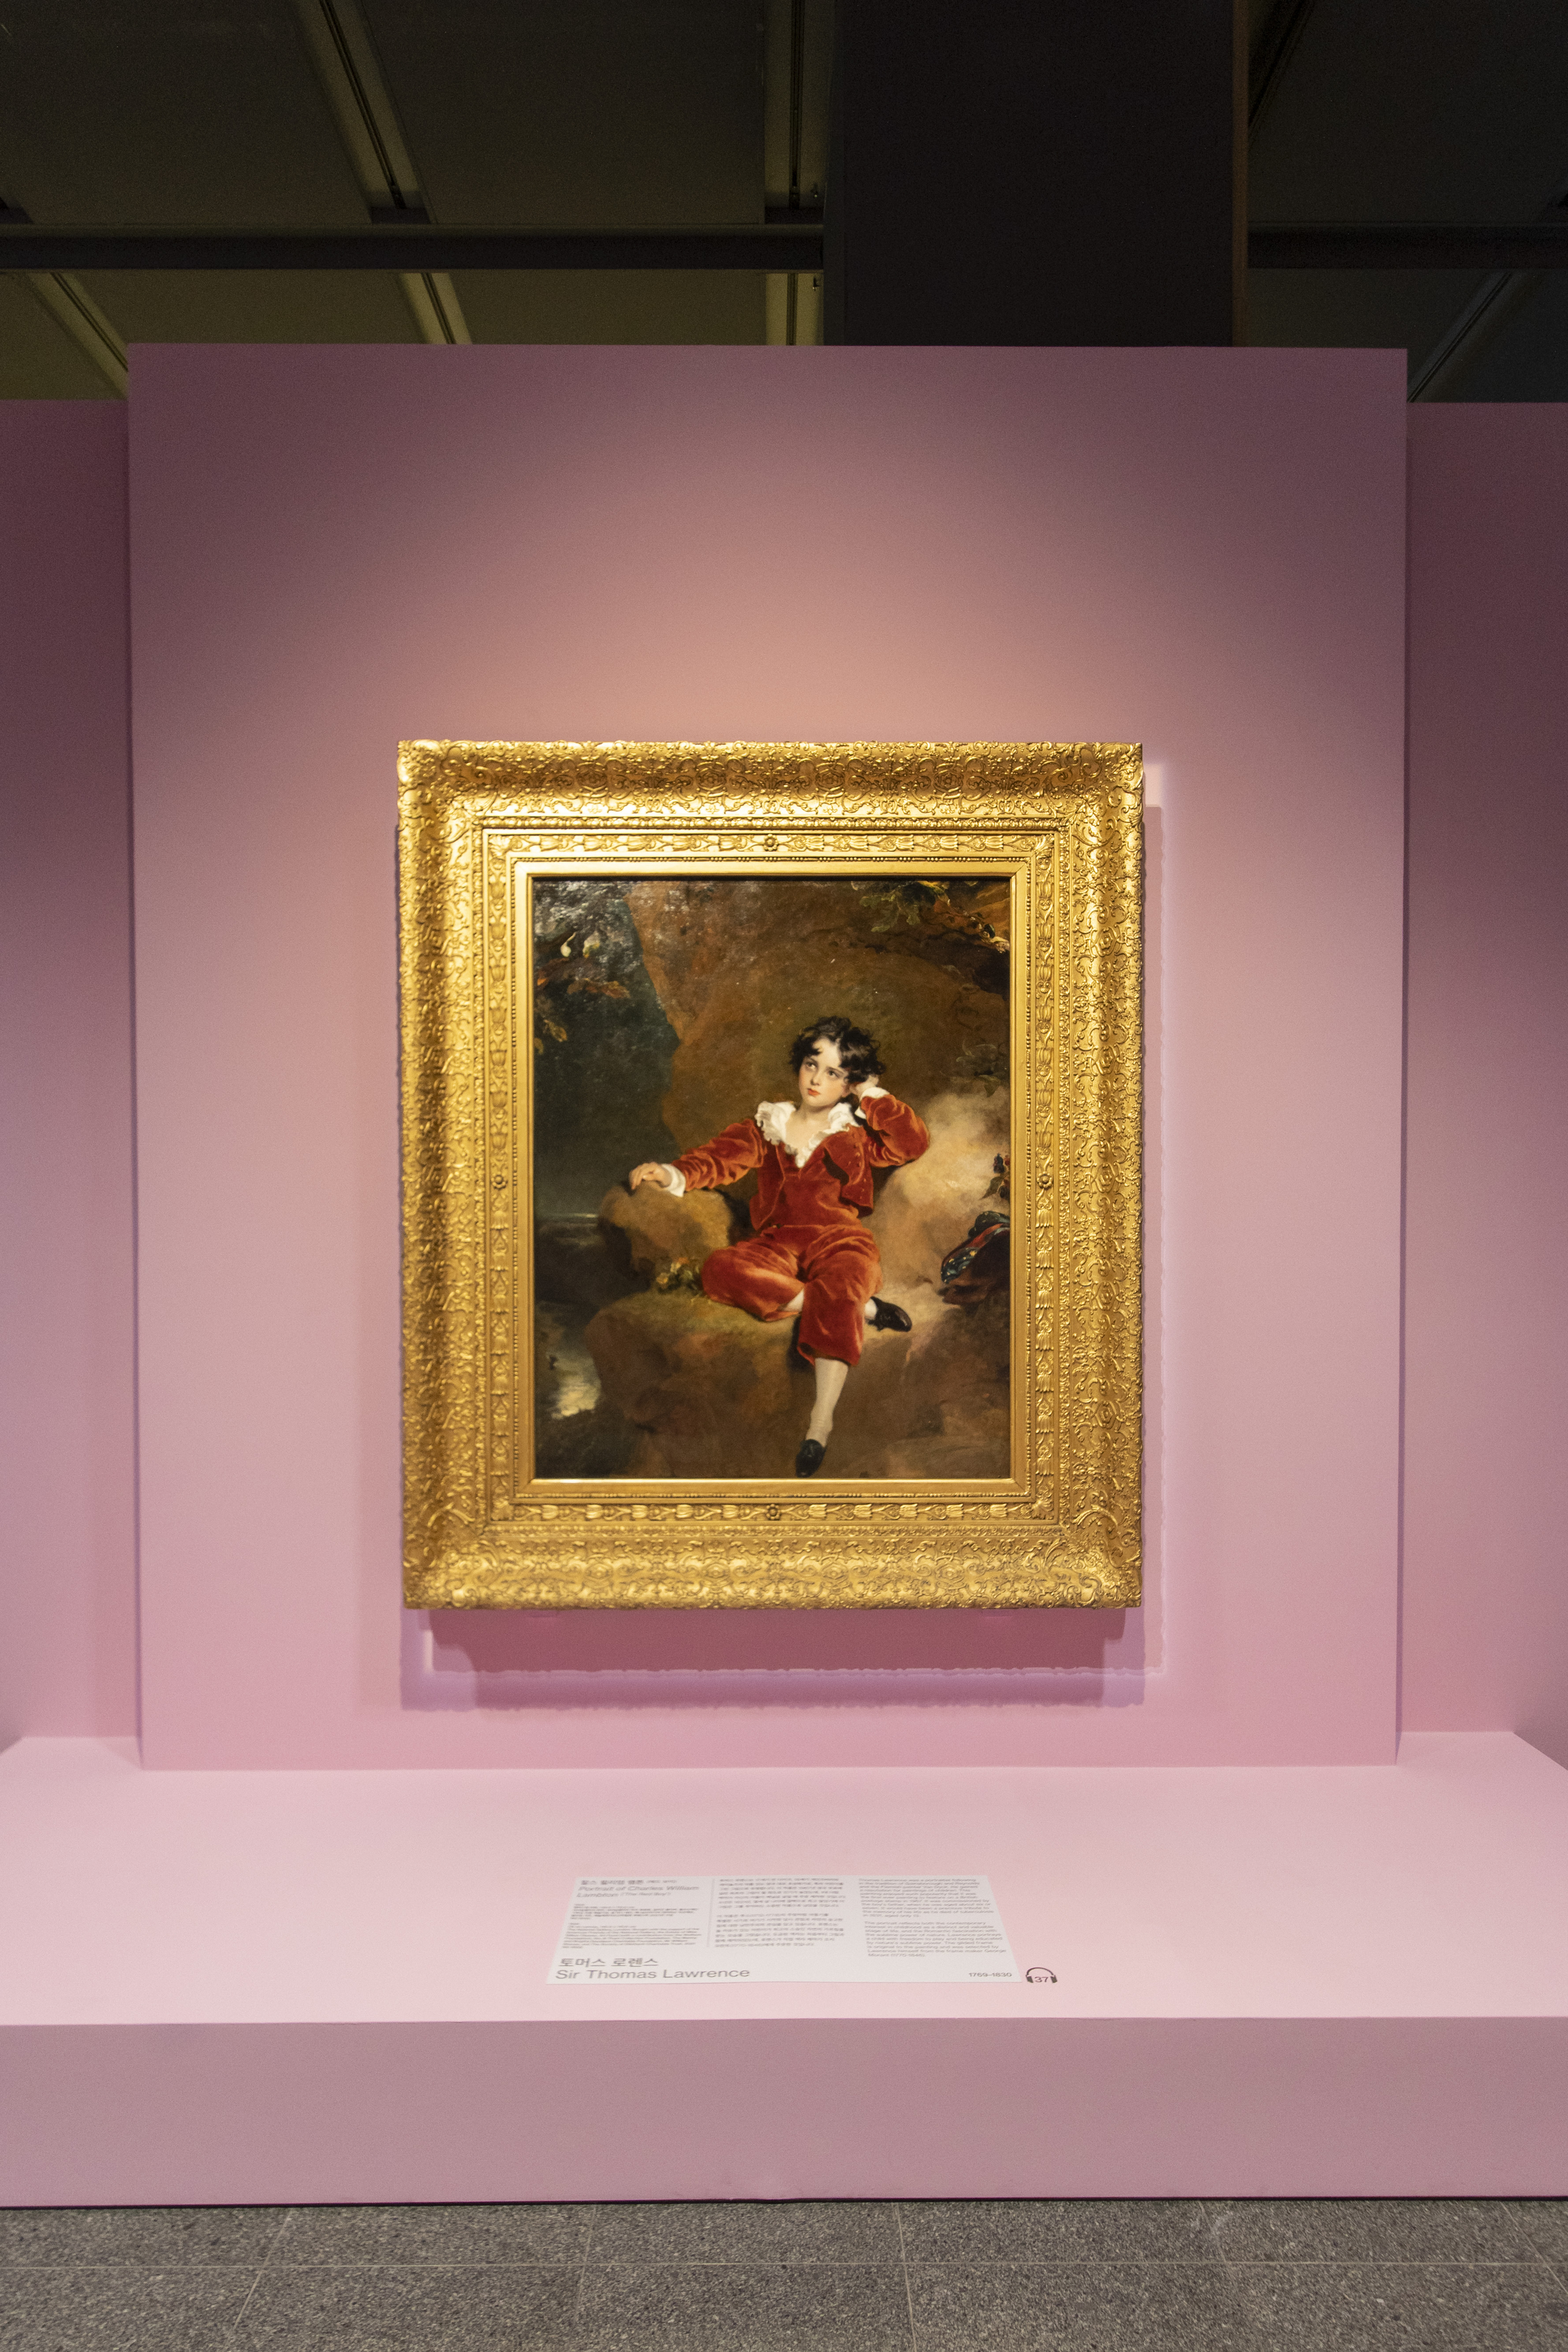 국립중앙박물관 ‘거장의 시선, 사람을 향하다’에서 찰스 윌리엄 램튼을 그린 그림이 조명을 받고 있다.